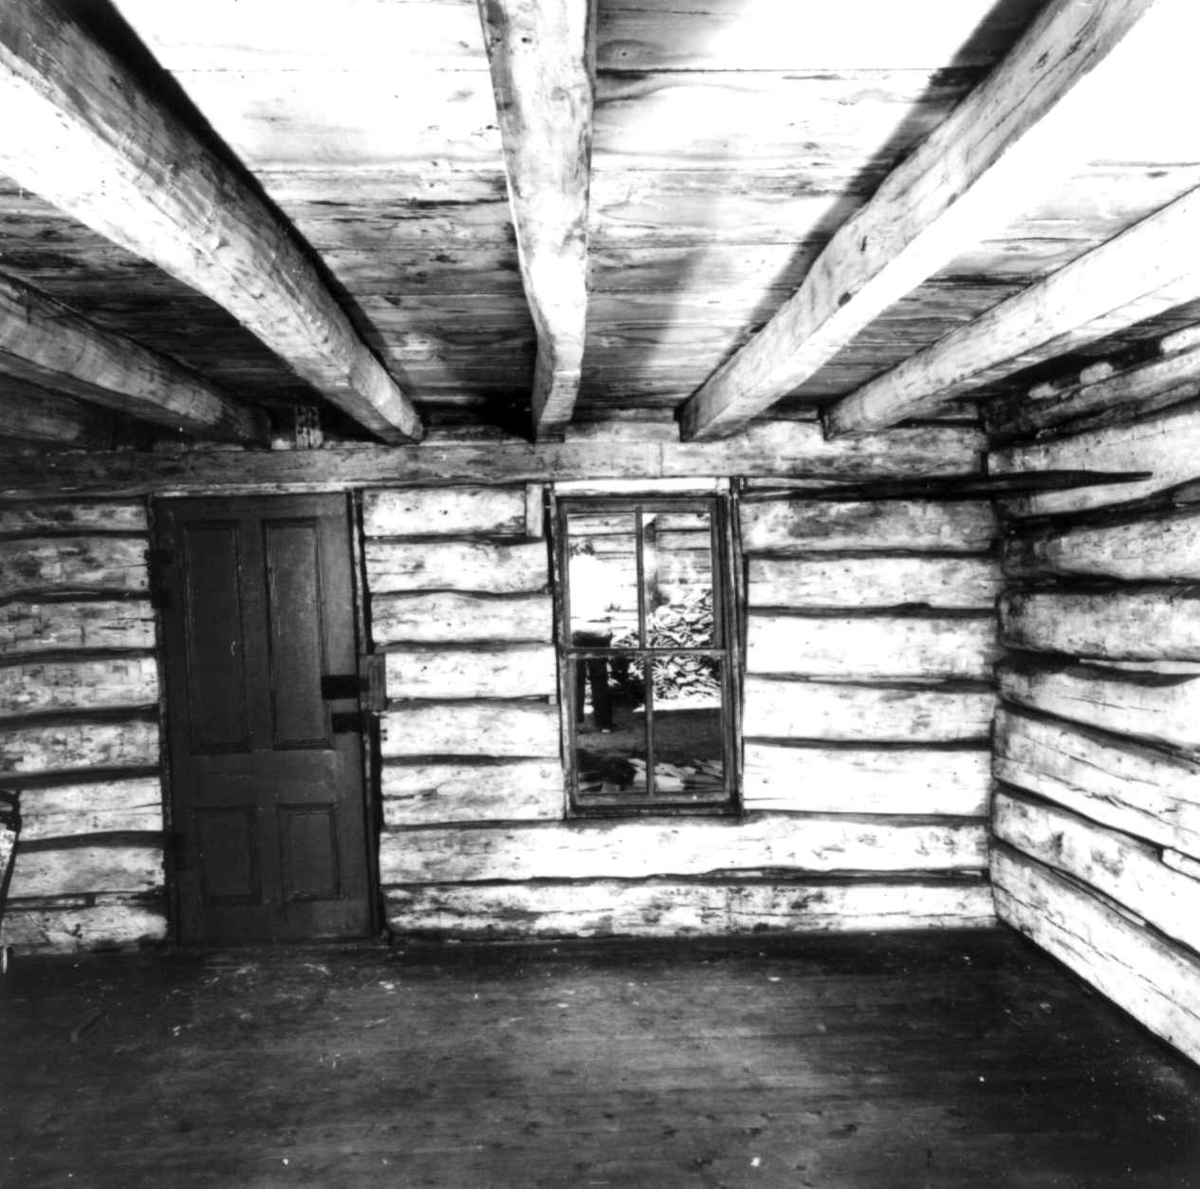 Pionerhytta fra Kindred i North Dakota, USA. Interiør. Fotografert på Norsk Folkemuseum i september 1972, før riving og flytting til Hedmarksmuseet. Møblene er flyttet ut.